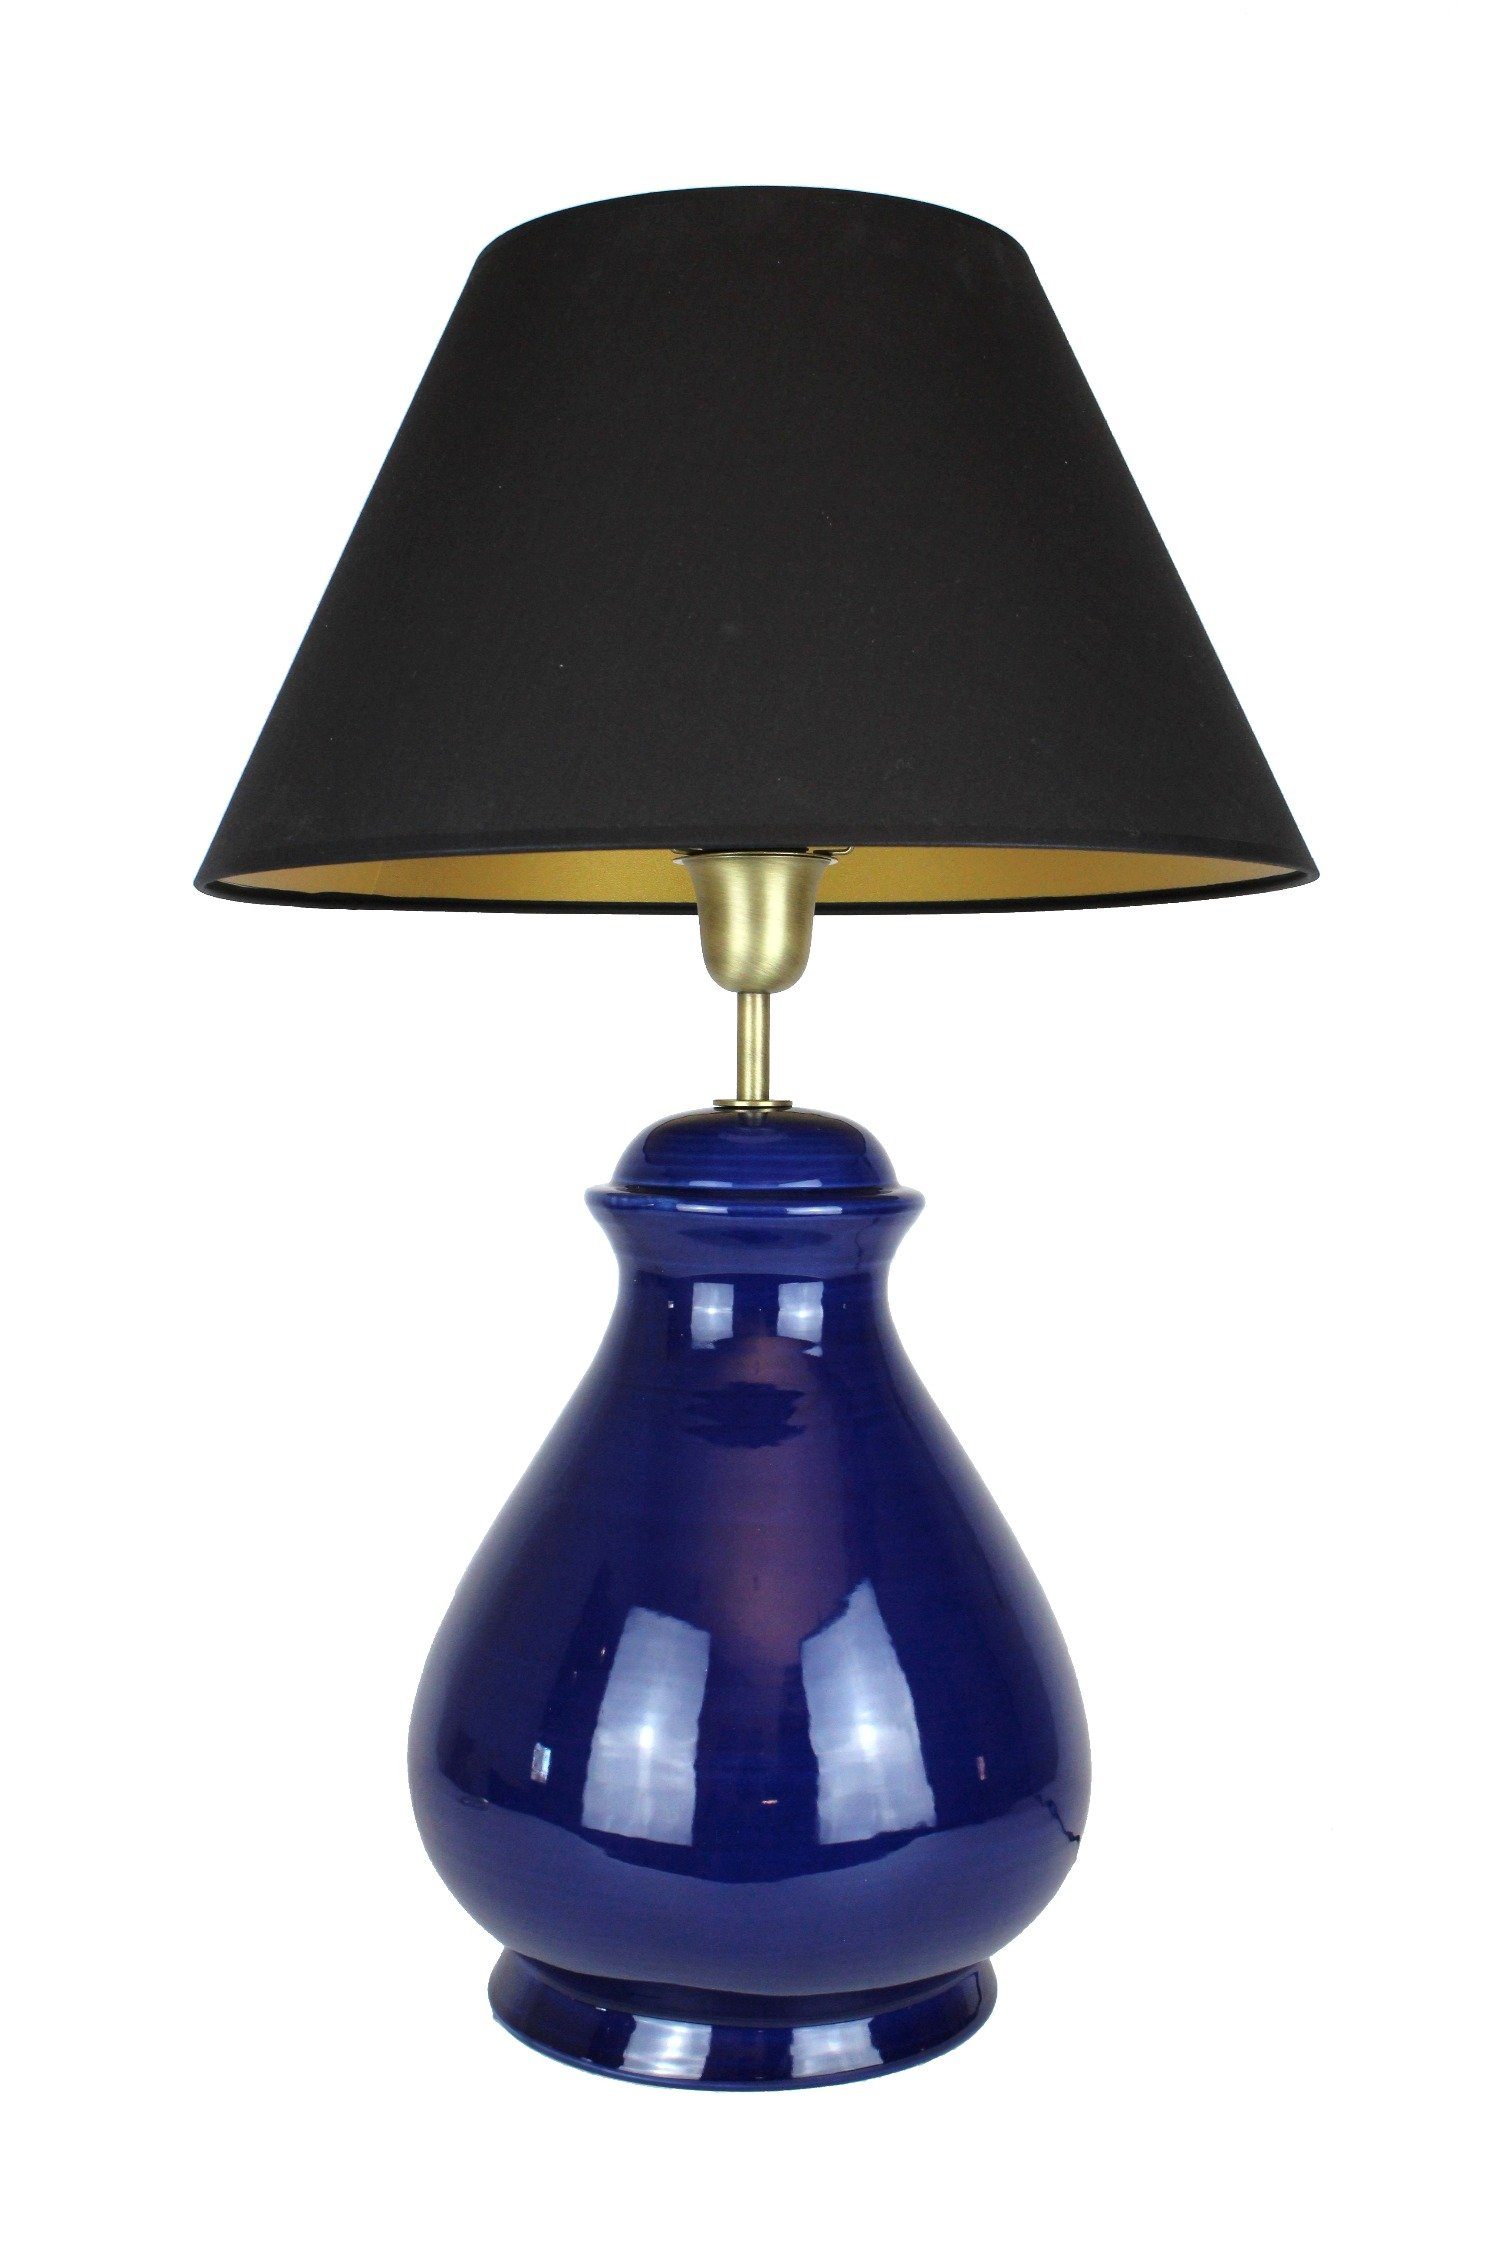 Signature Home Collection Nachttischlampe »Tischlampe Keramik dunkelblau  mit Lampenschirm schwarz«, Nachttischlampe online kaufen | OTTO